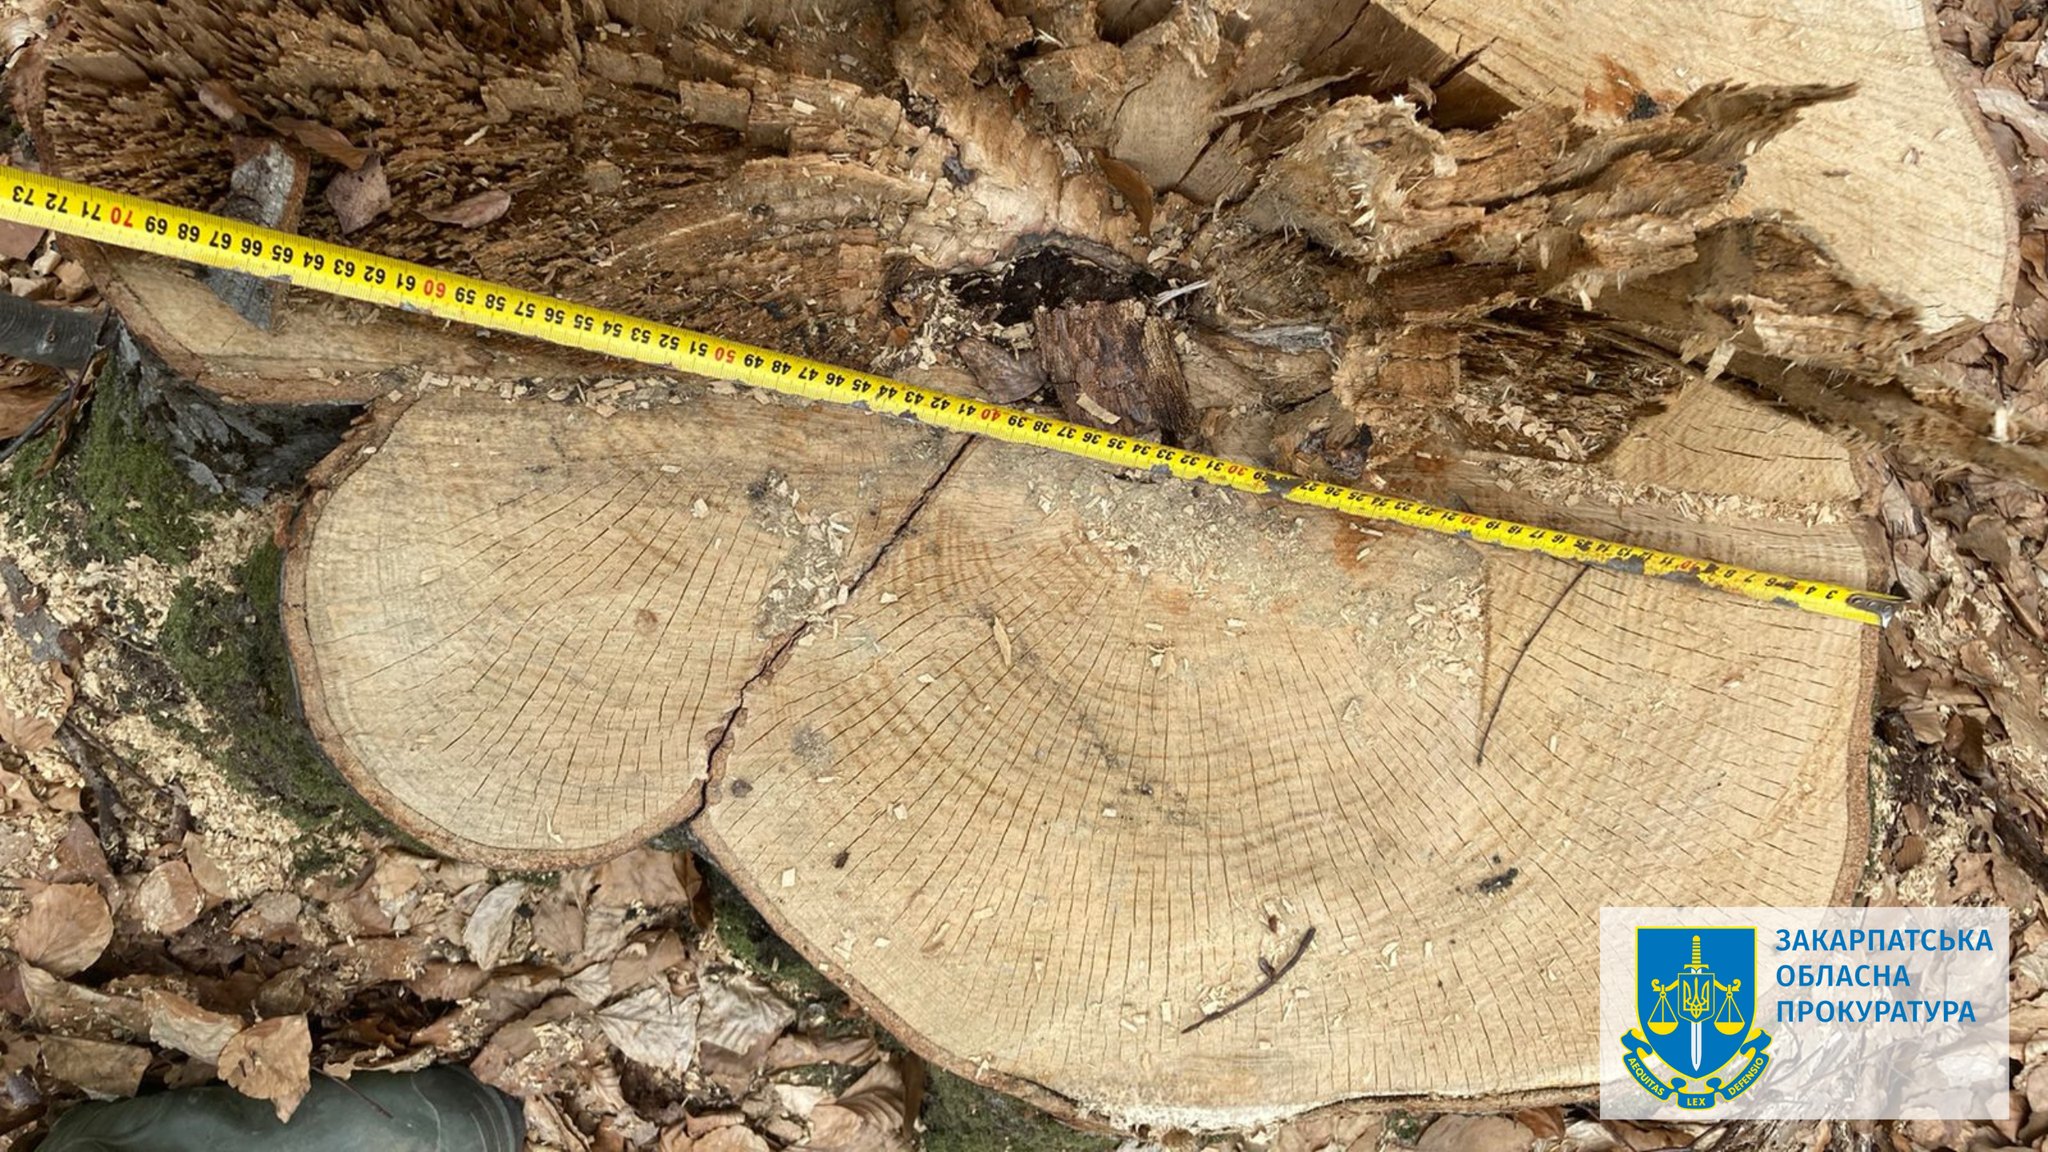 Ексначальника лісогосподарської дільниці на Закарпатті підозрюють у незаконних рубках зі збитками на понад 50 млн грн (ФОТО)